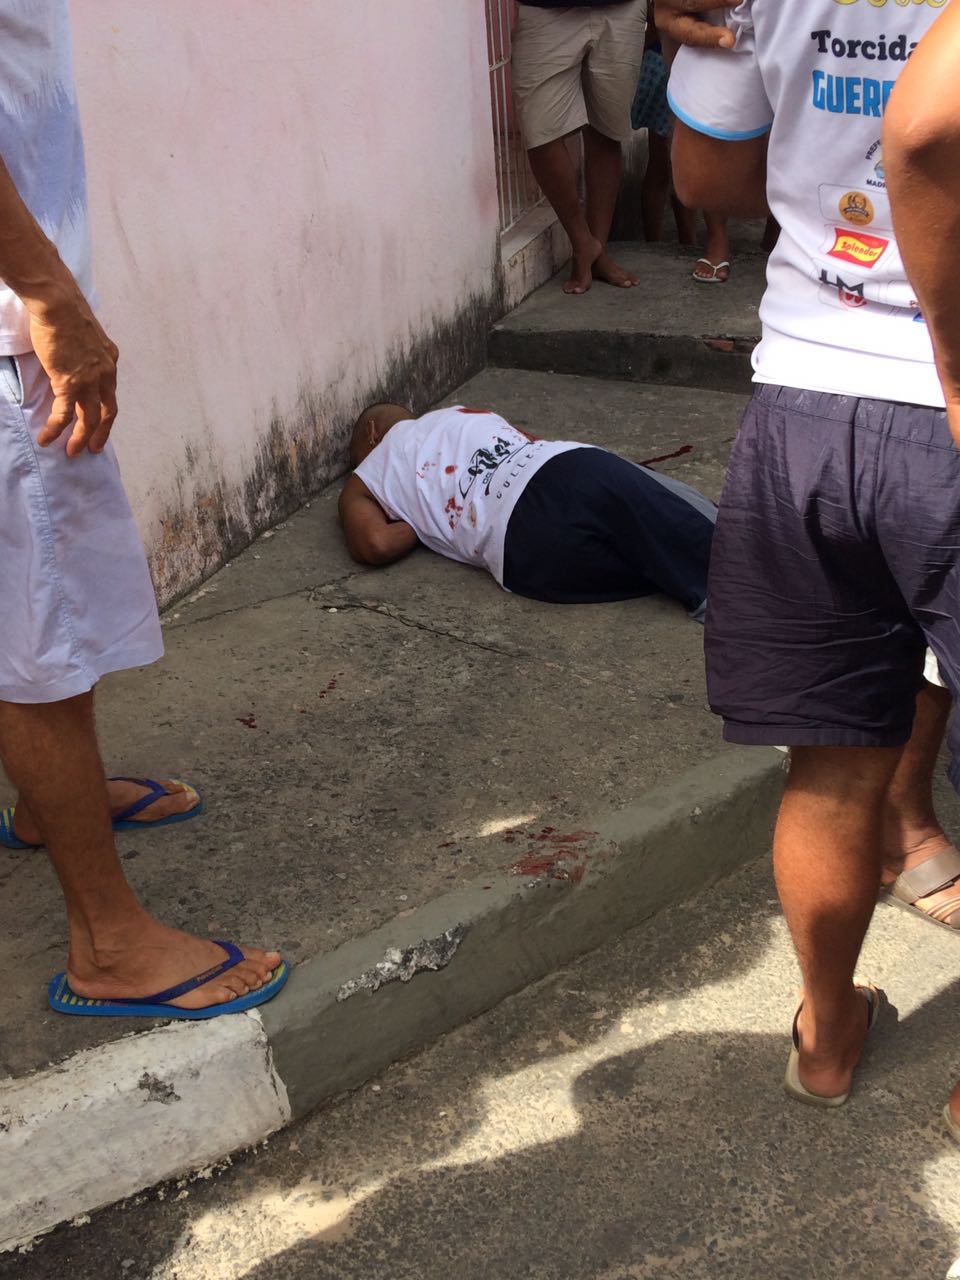 Jovem é morto a tiros em Madre de Deus - Bahia No Ar! (Blogue)